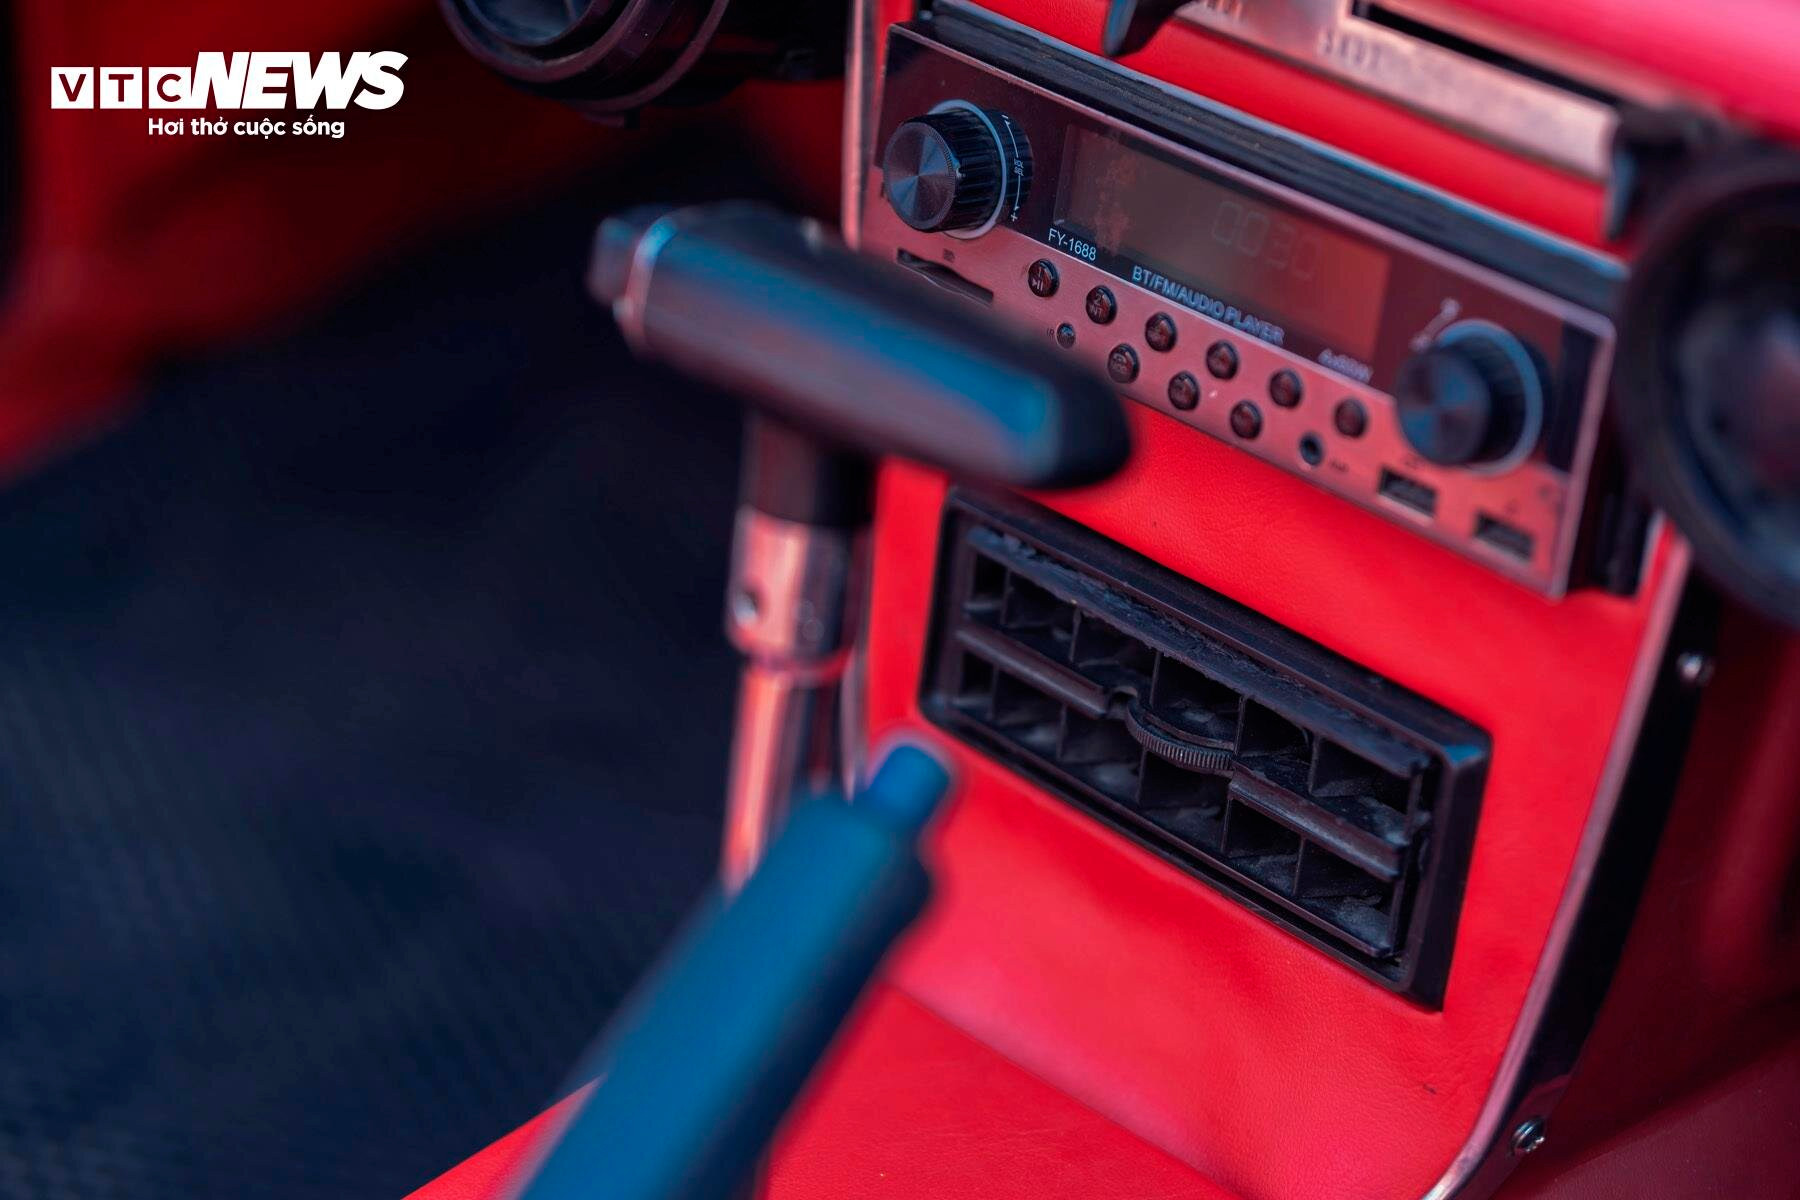 Đầu giải trí với kết nối Bluetooth và dàn âm thanh Pioneer trên Datsun Fairlady 1969.